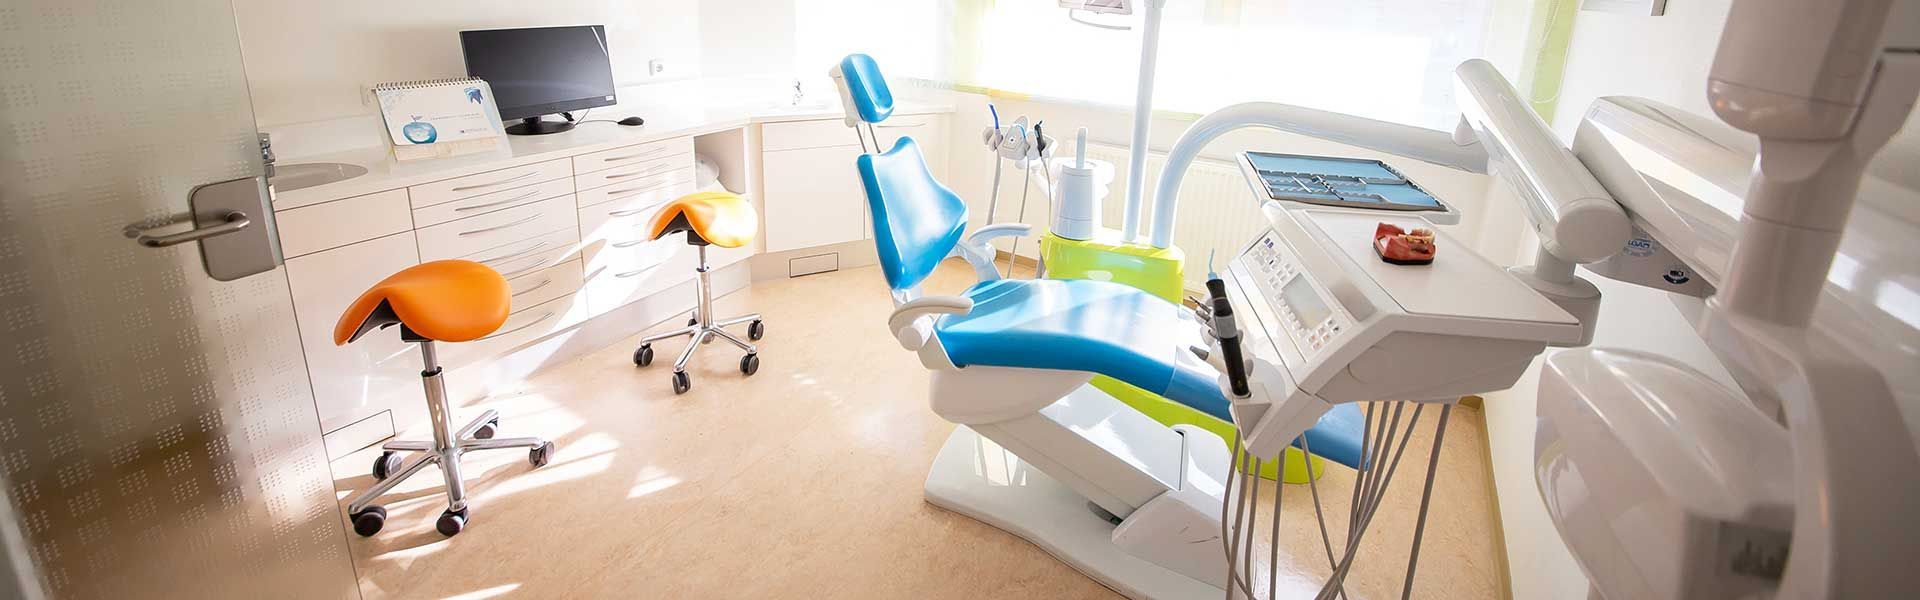 Wir sind Ihre Zahnarztpraxis für Angstpatienten